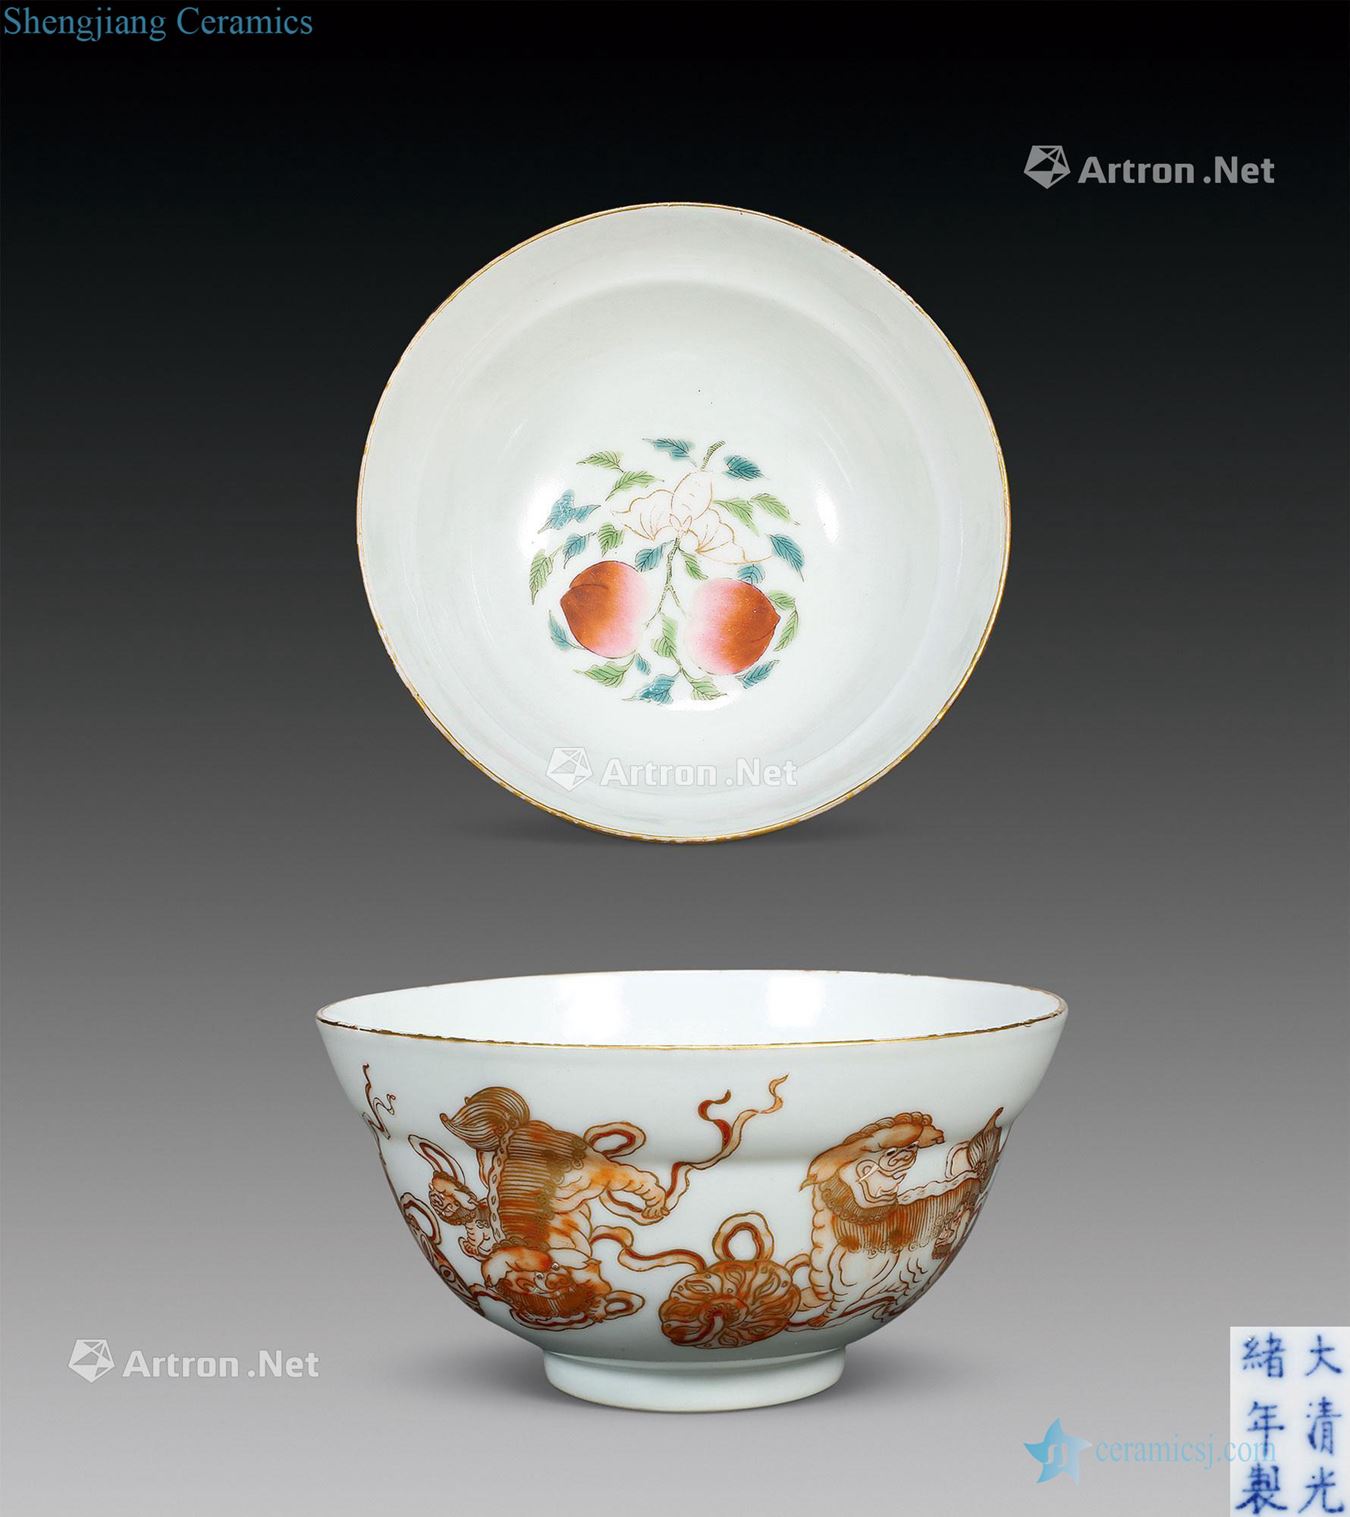 "Qing guangxu reign of qing emperor guangxu years" type of alum red enamel or bowl